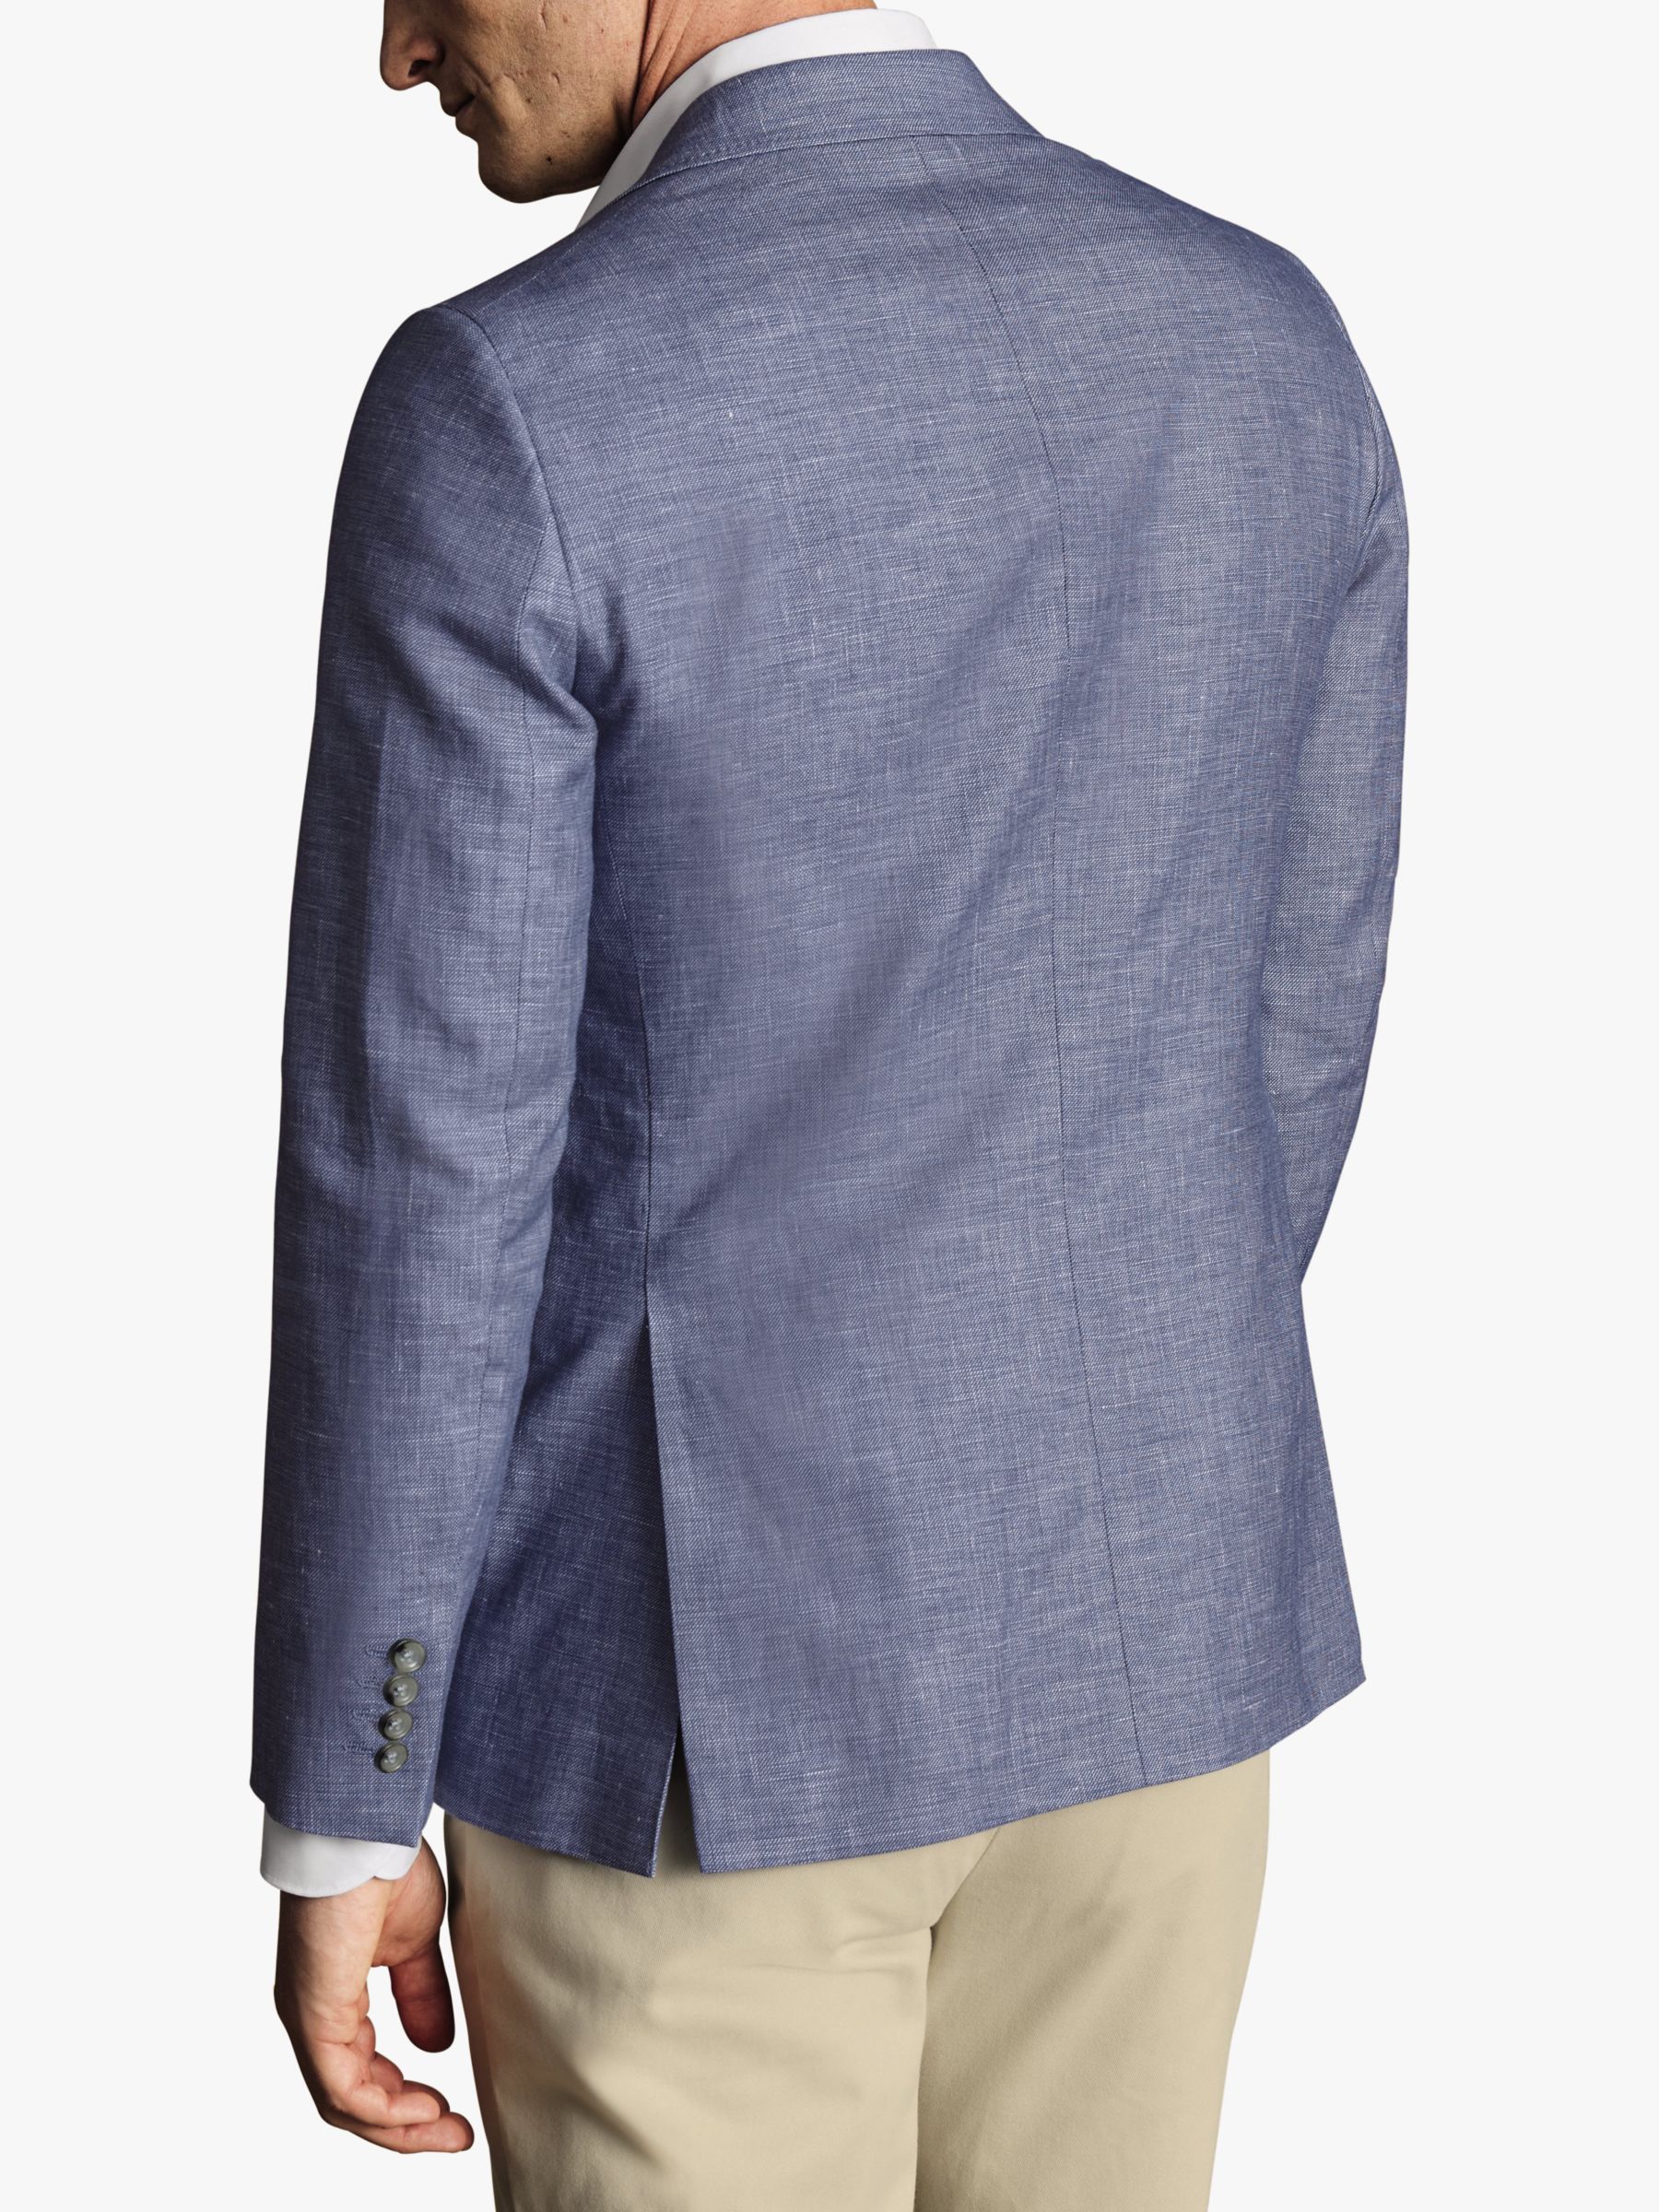 Charles Tyrwhitt Classic Fit Linen Cotton Blend Jacket, Cobalt Blue, 40R